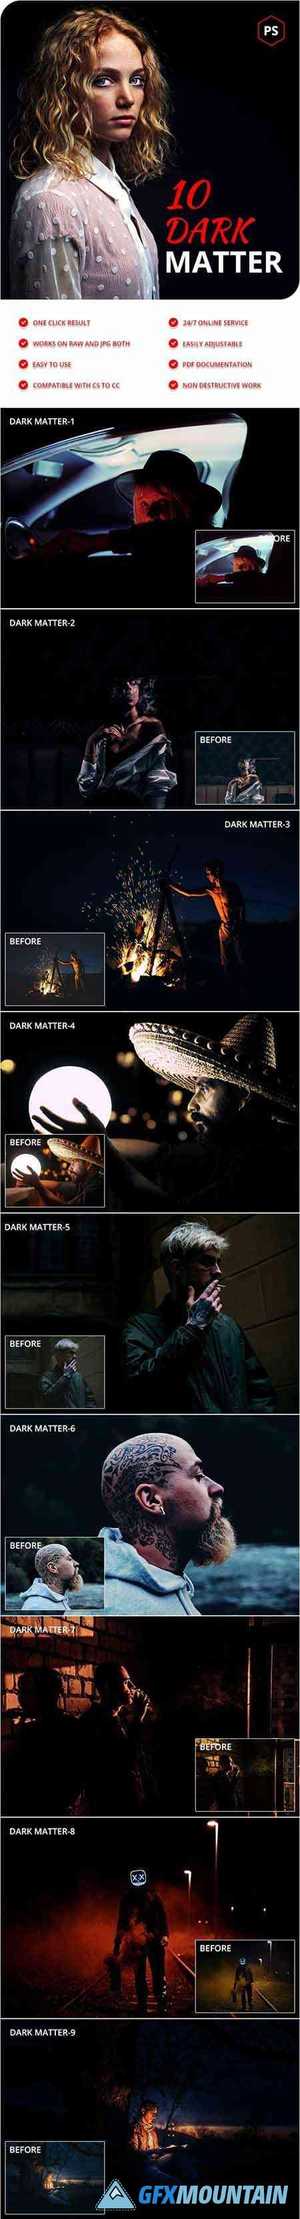 10 Dark Matter Photoshop Actions 28329765